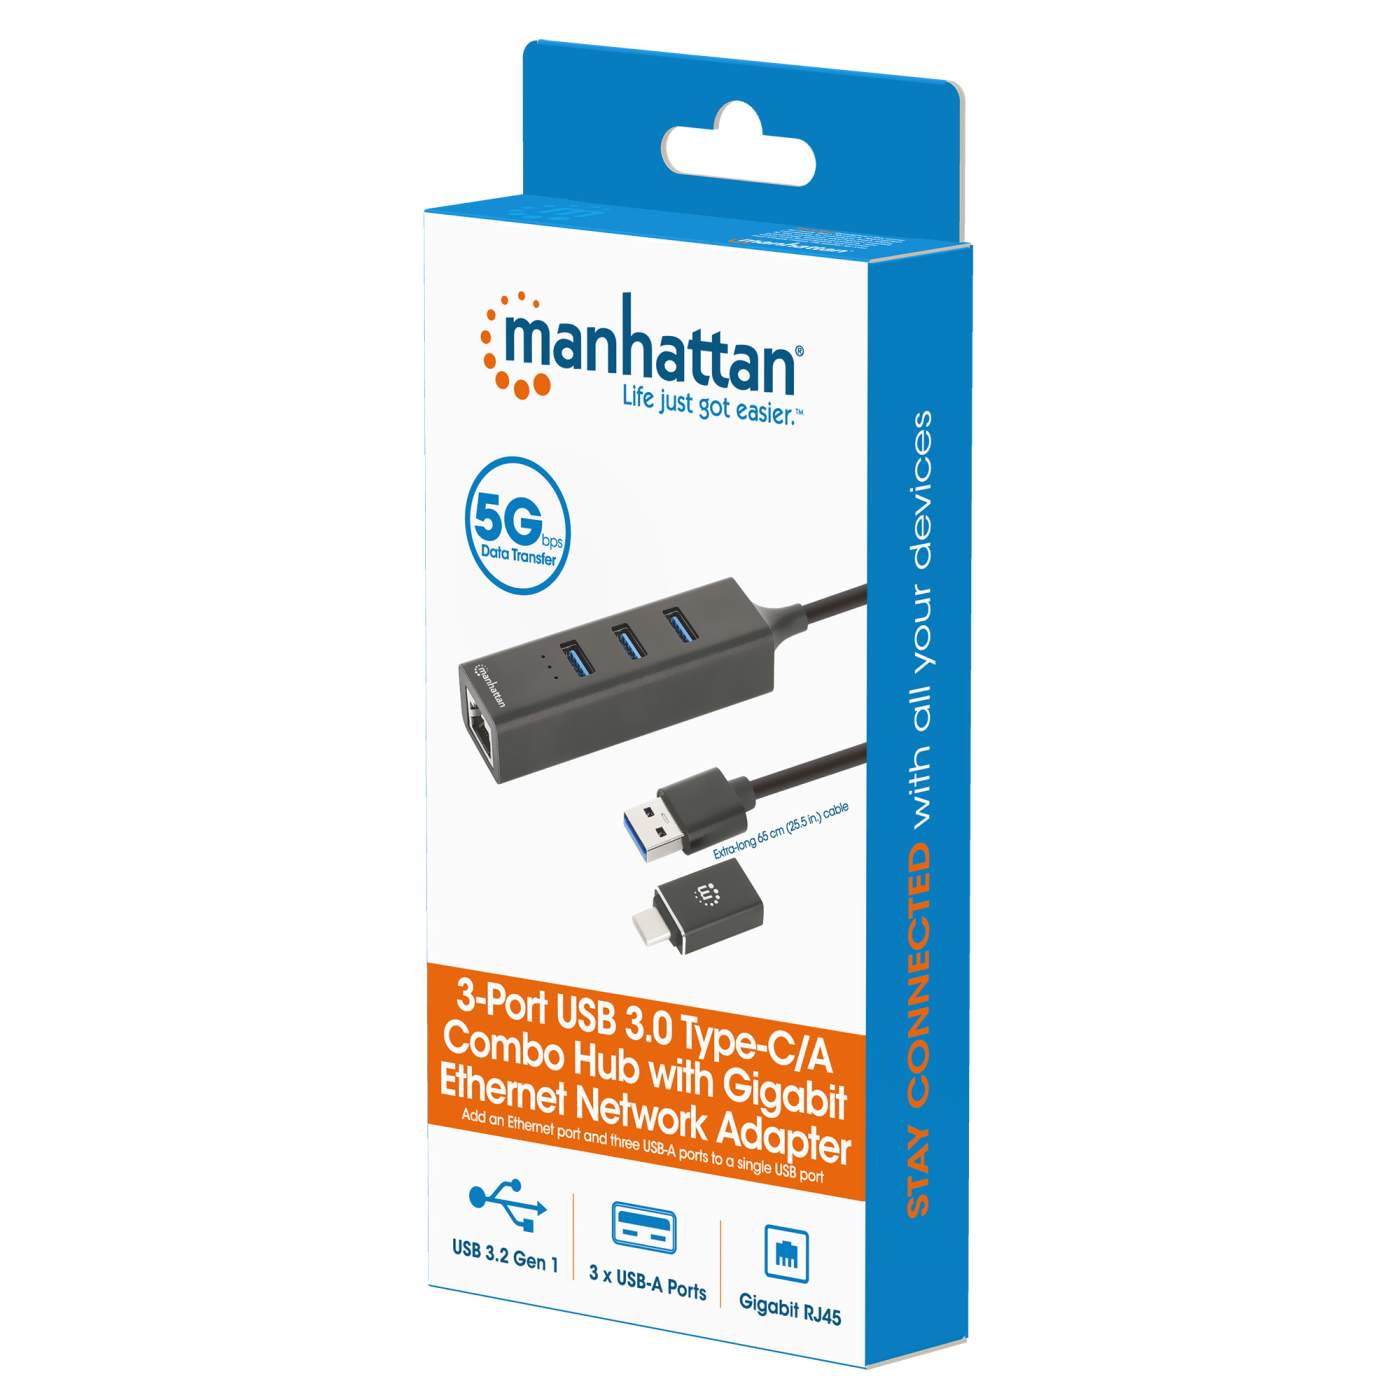 Concentrador USB-C, multip., 5 p., 2x USB-A, USB-C, HDMI, LAN